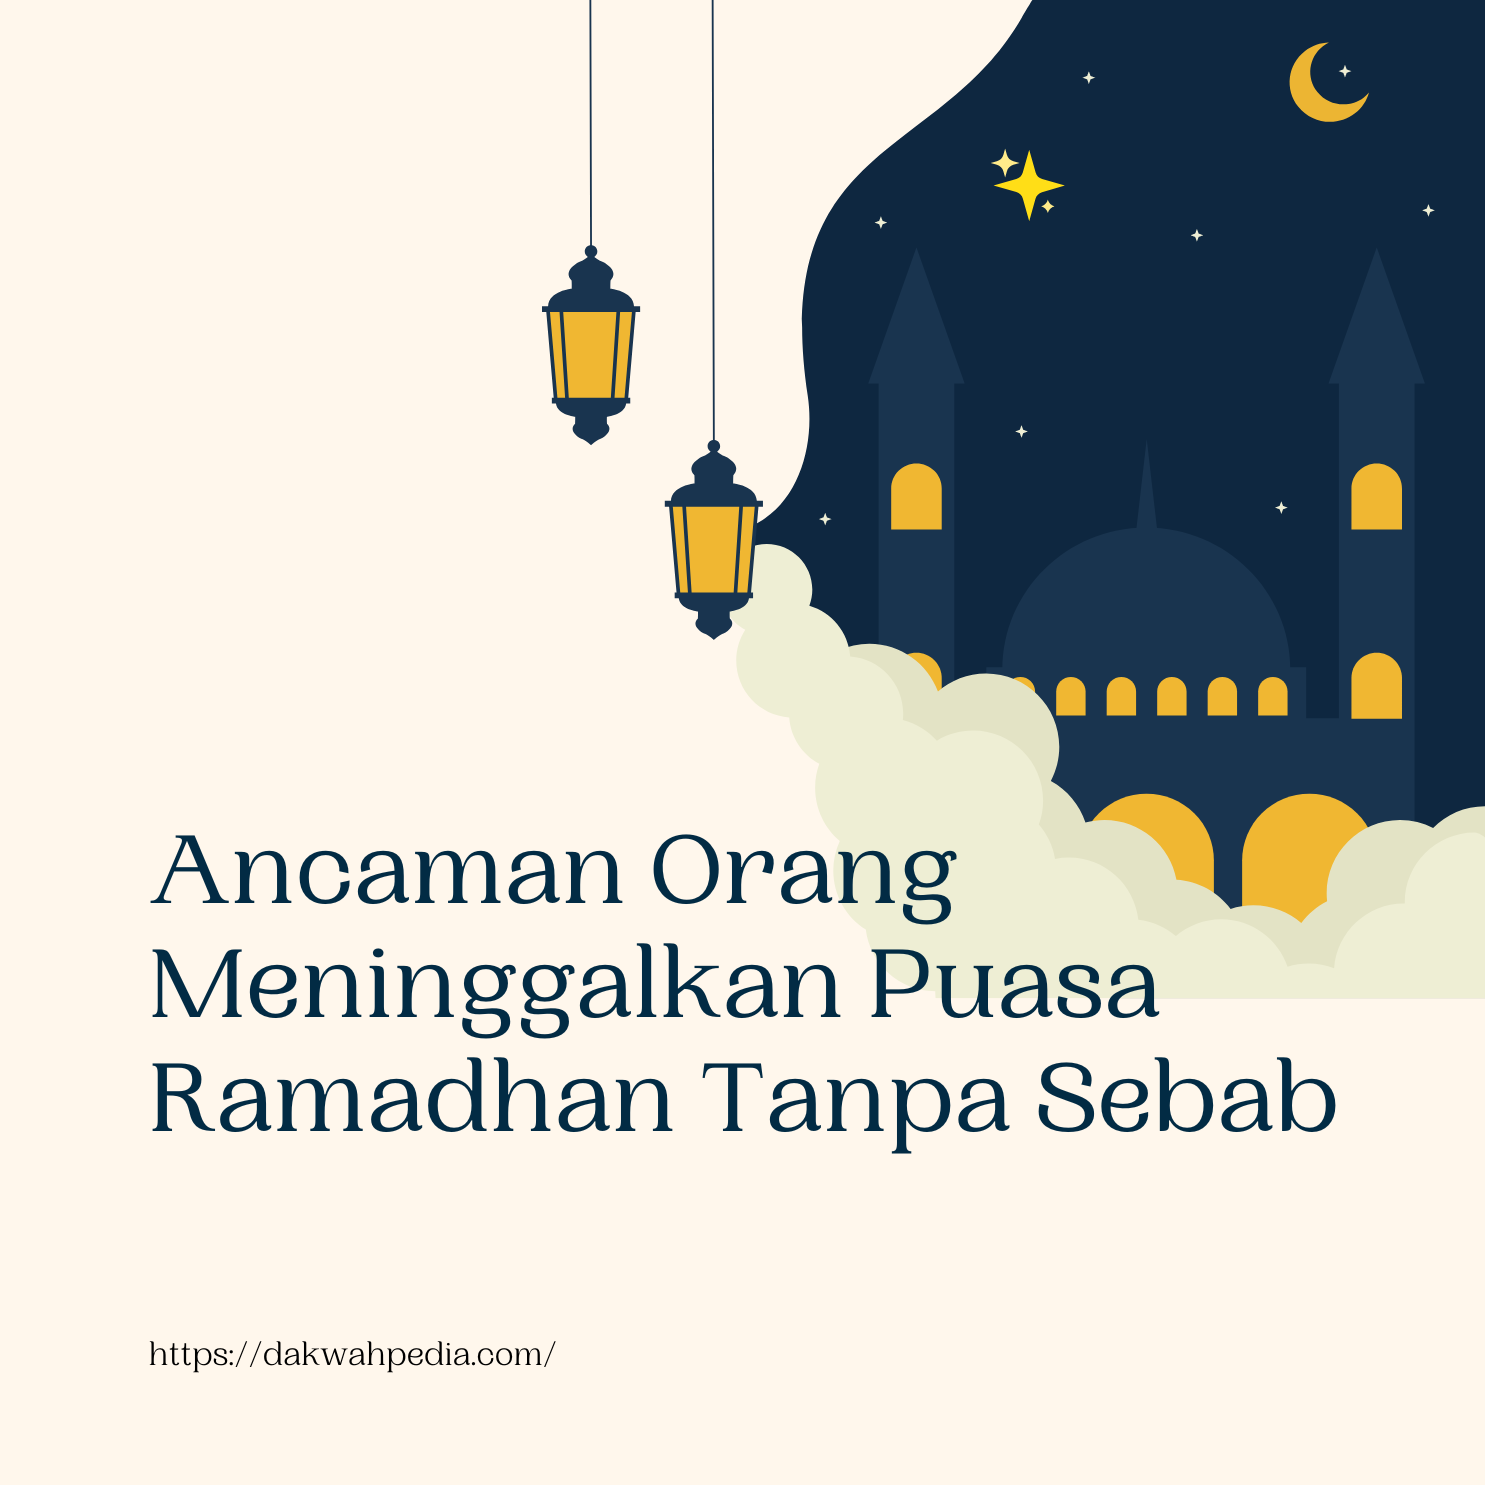 Ancaman Orang Meninggalkan Puasa Ramadhan Tanpa Sebab